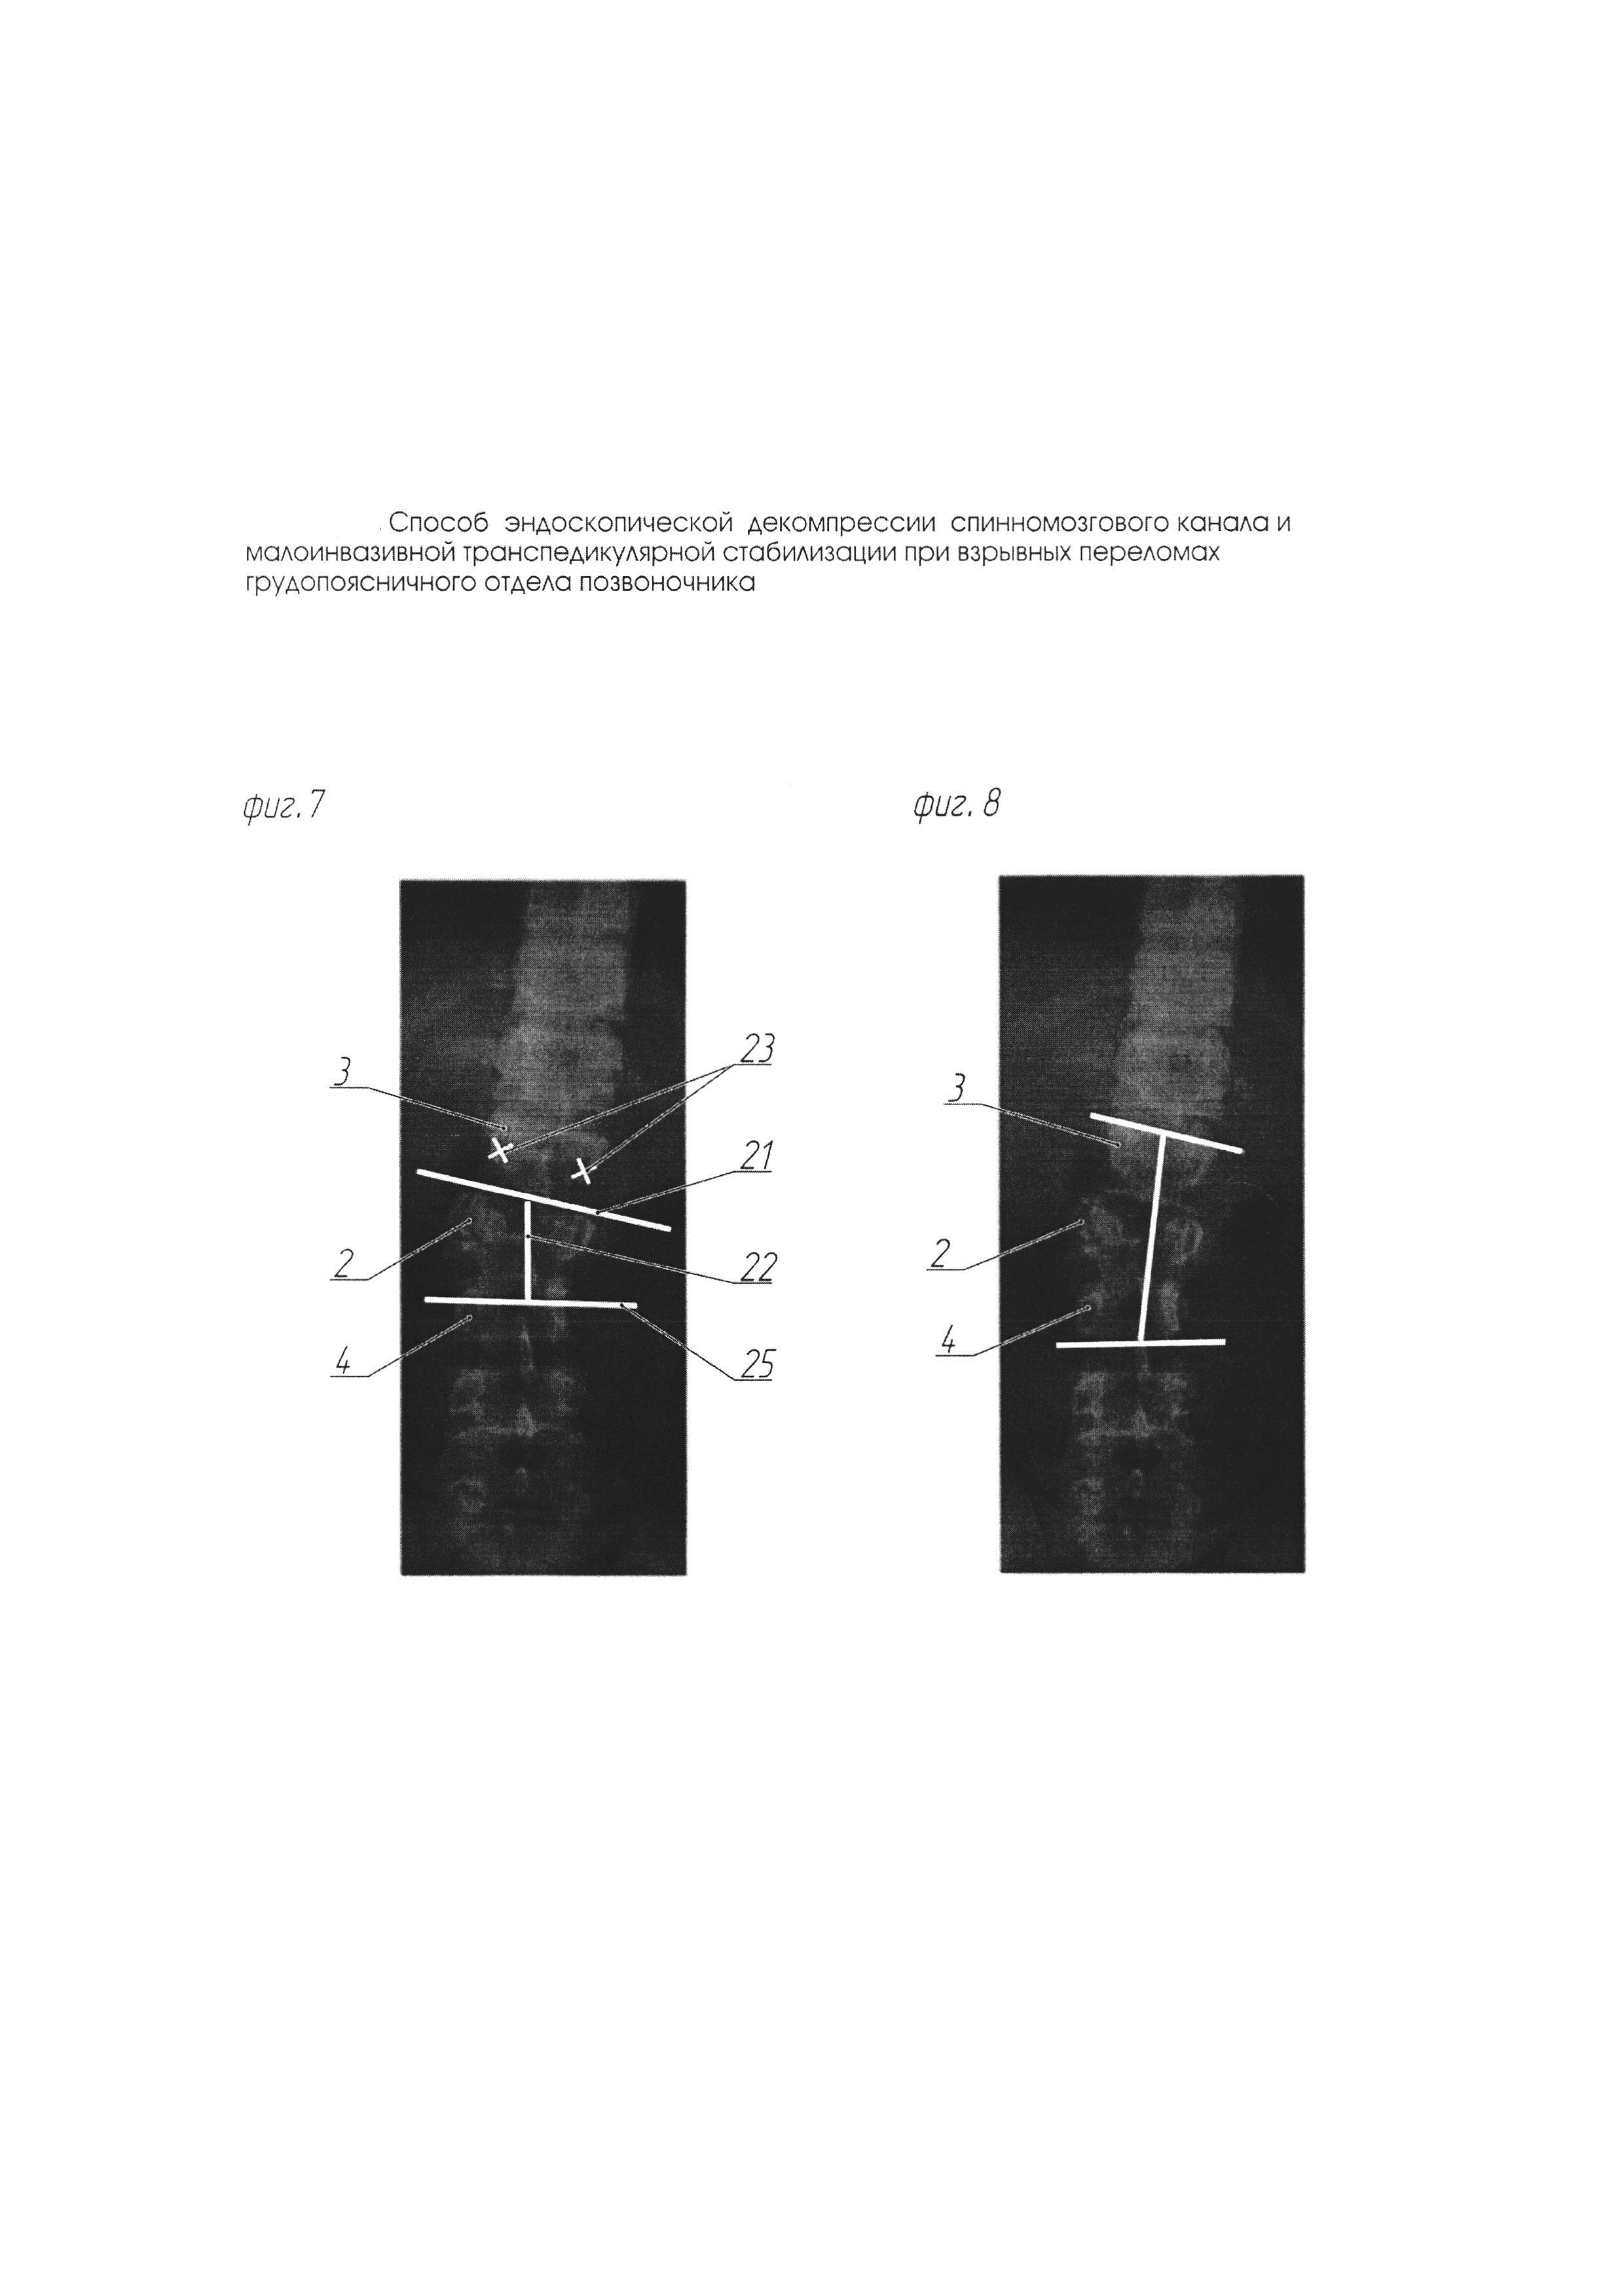 Способ эндоскопической декомпрессии спинномозгового канала и малоинвазивной транспедикулярной стабилизации при взрывных переломах грудопоясничного отдела позвоночника